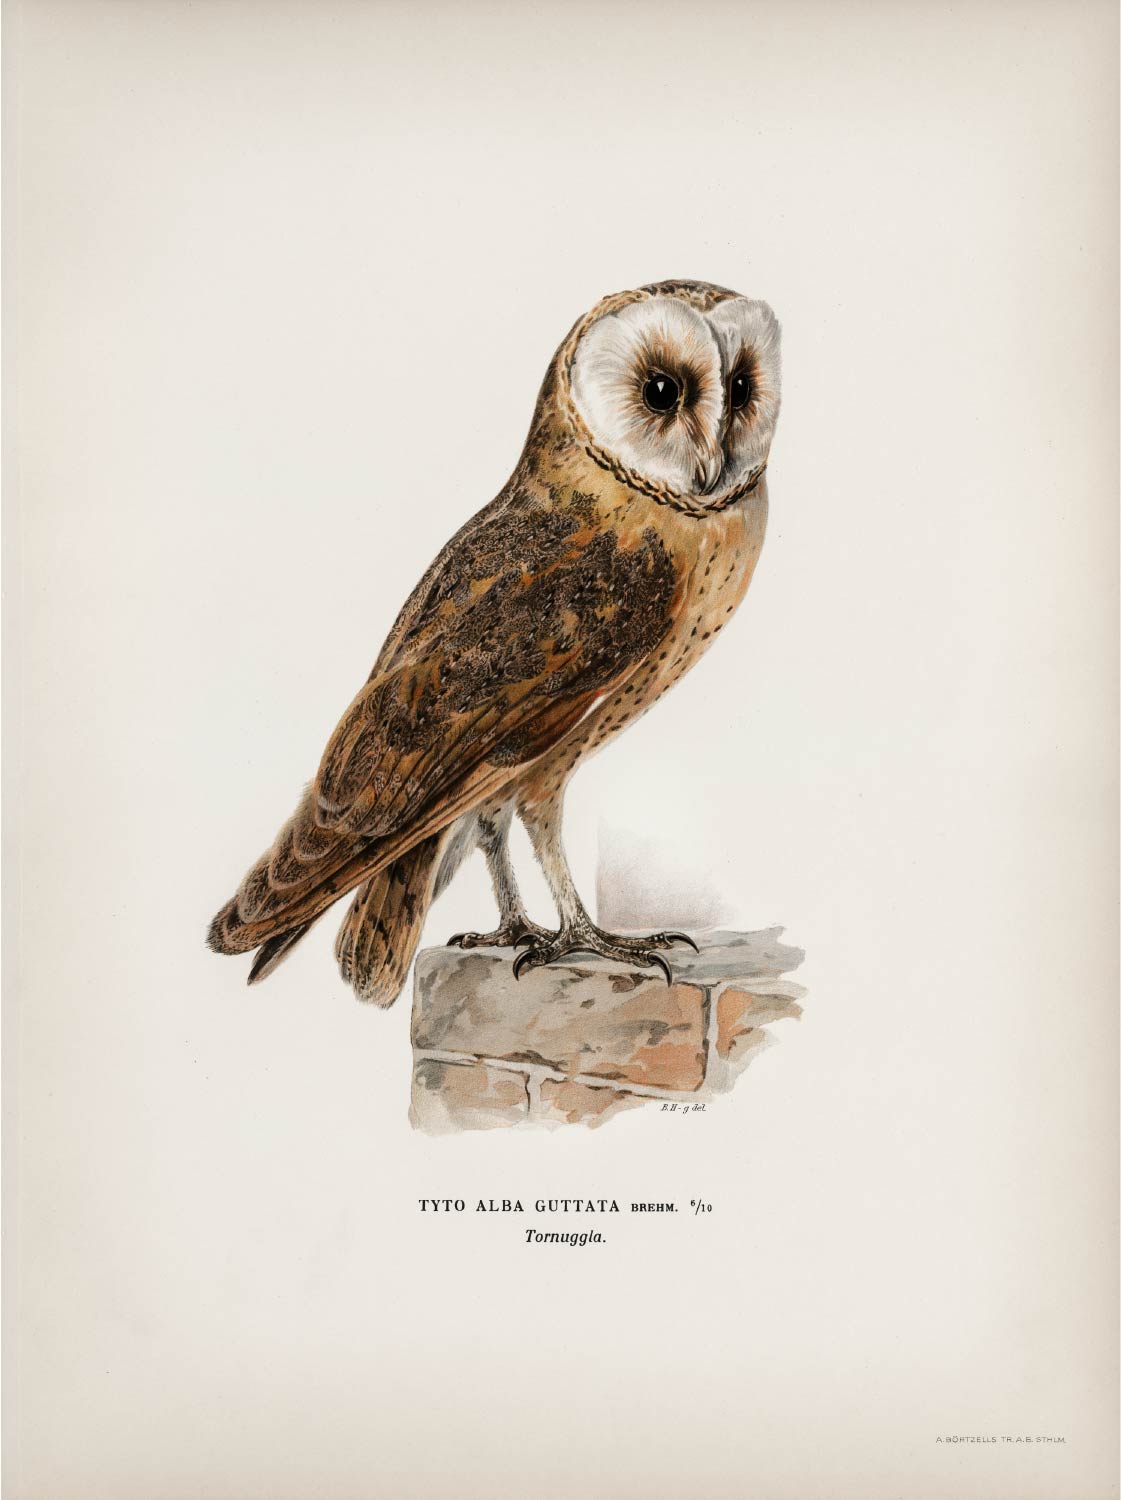 【無料壁紙】フォン・ライト・ブラザーズ「ムネグロメンフクロウ」 / Von Wright brothers_Tyto alba guttata owl